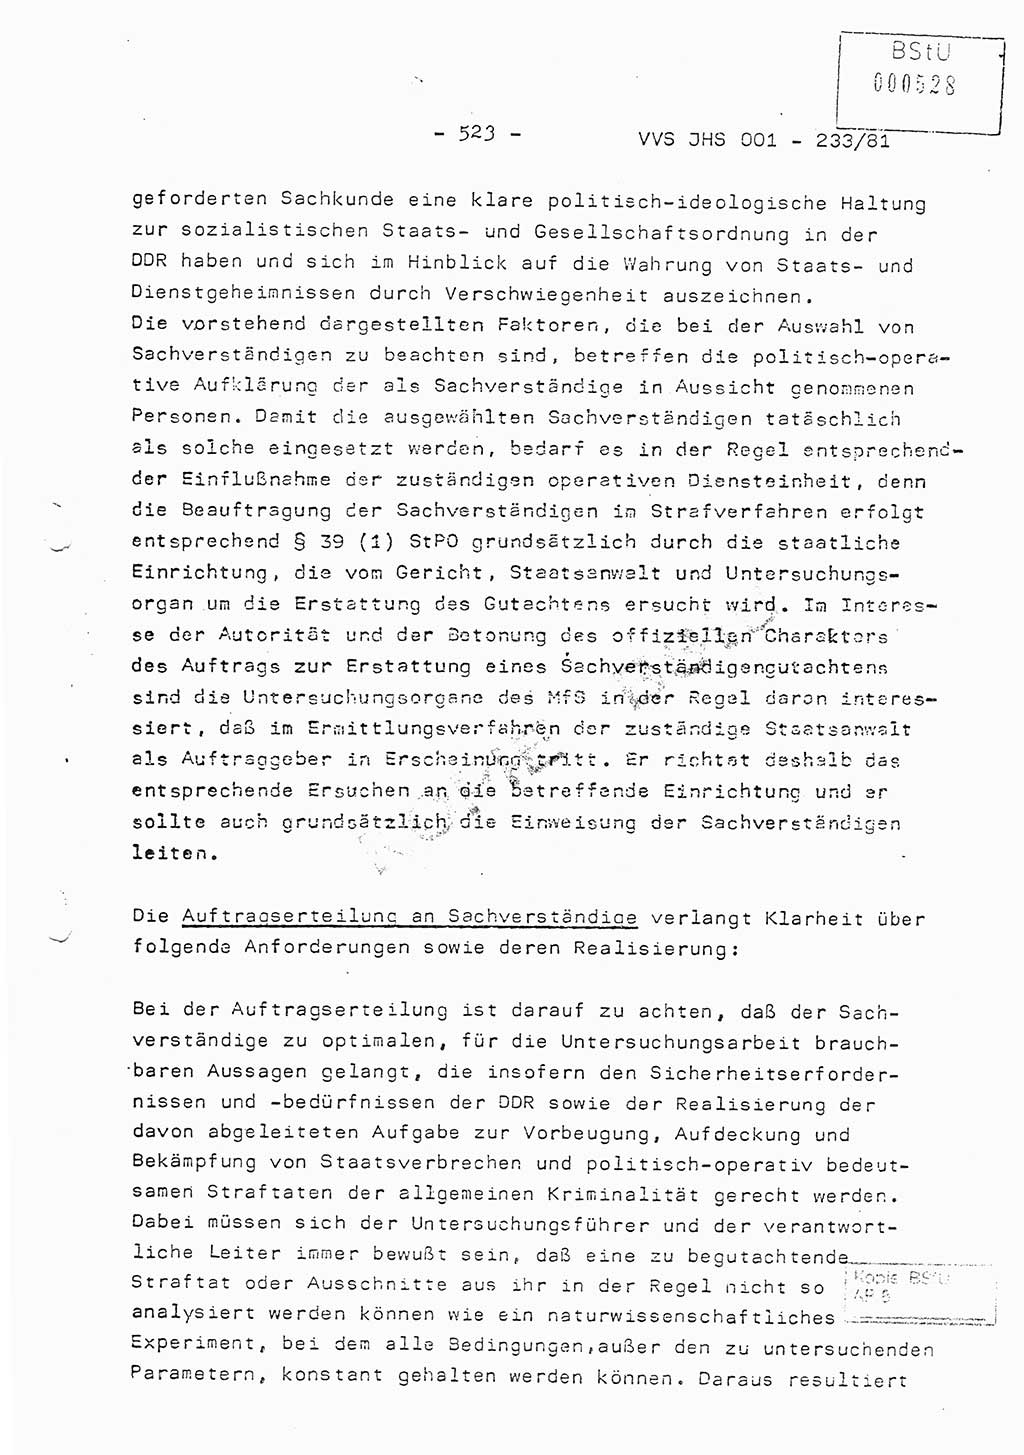 Dissertation Oberstleutnant Horst Zank (JHS), Oberstleutnant Dr. Karl-Heinz Knoblauch (JHS), Oberstleutnant Gustav-Adolf Kowalewski (HA Ⅸ), Oberstleutnant Wolfgang Plötner (HA Ⅸ), Ministerium für Staatssicherheit (MfS) [Deutsche Demokratische Republik (DDR)], Juristische Hochschule (JHS), Vertrauliche Verschlußsache (VVS) o001-233/81, Potsdam 1981, Blatt 523 (Diss. MfS DDR JHS VVS o001-233/81 1981, Bl. 523)